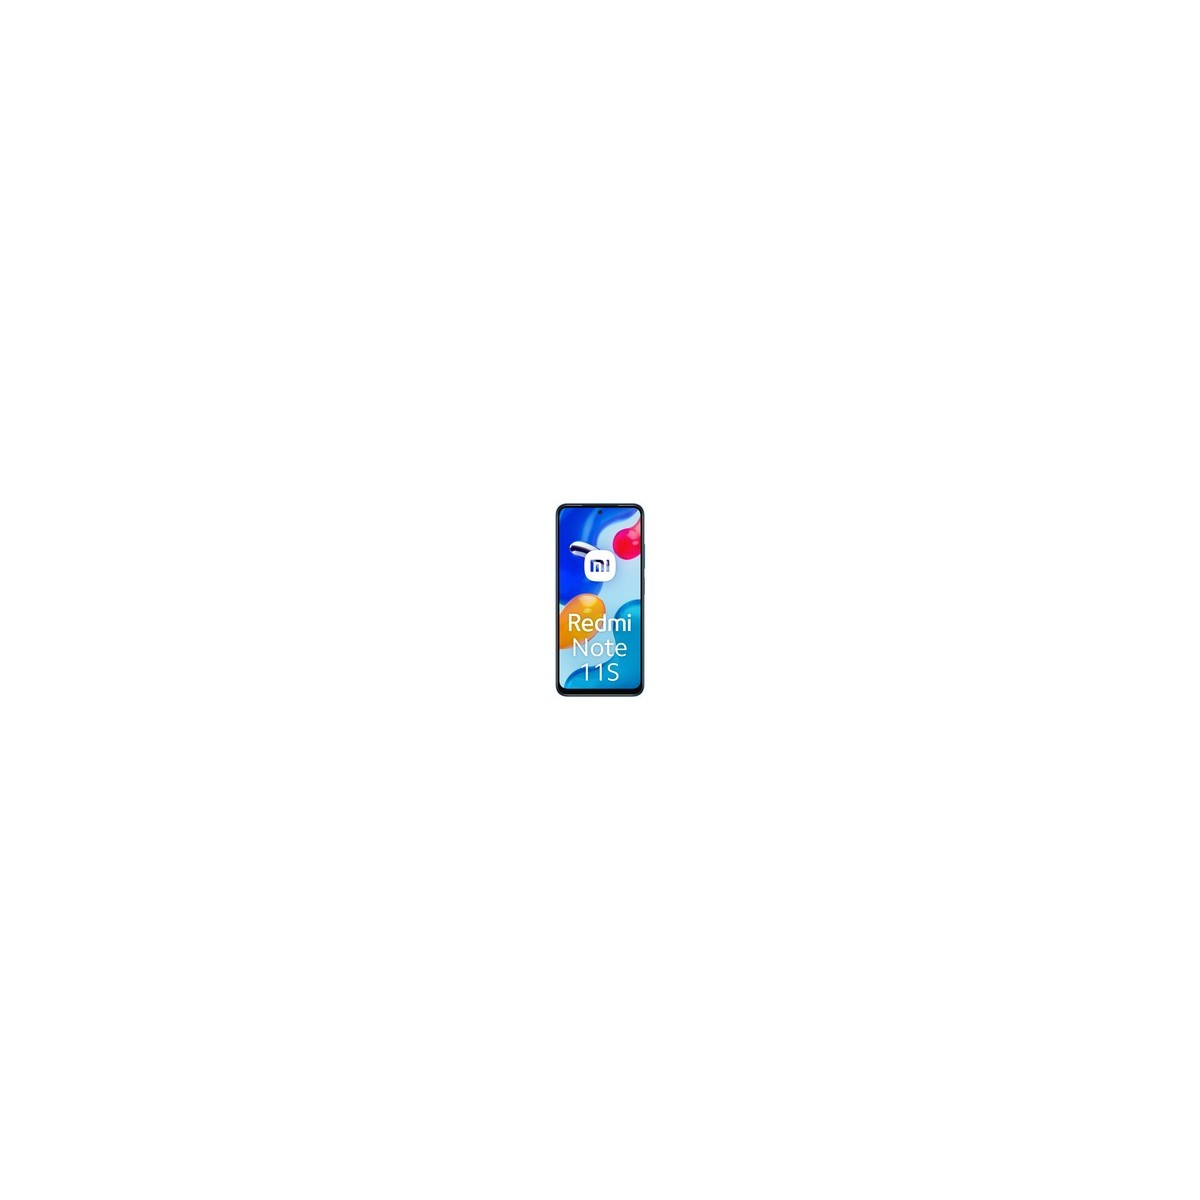 Xiaomi Redmi Note 1 - Smartphone - 8 MP 128 GB - Blau